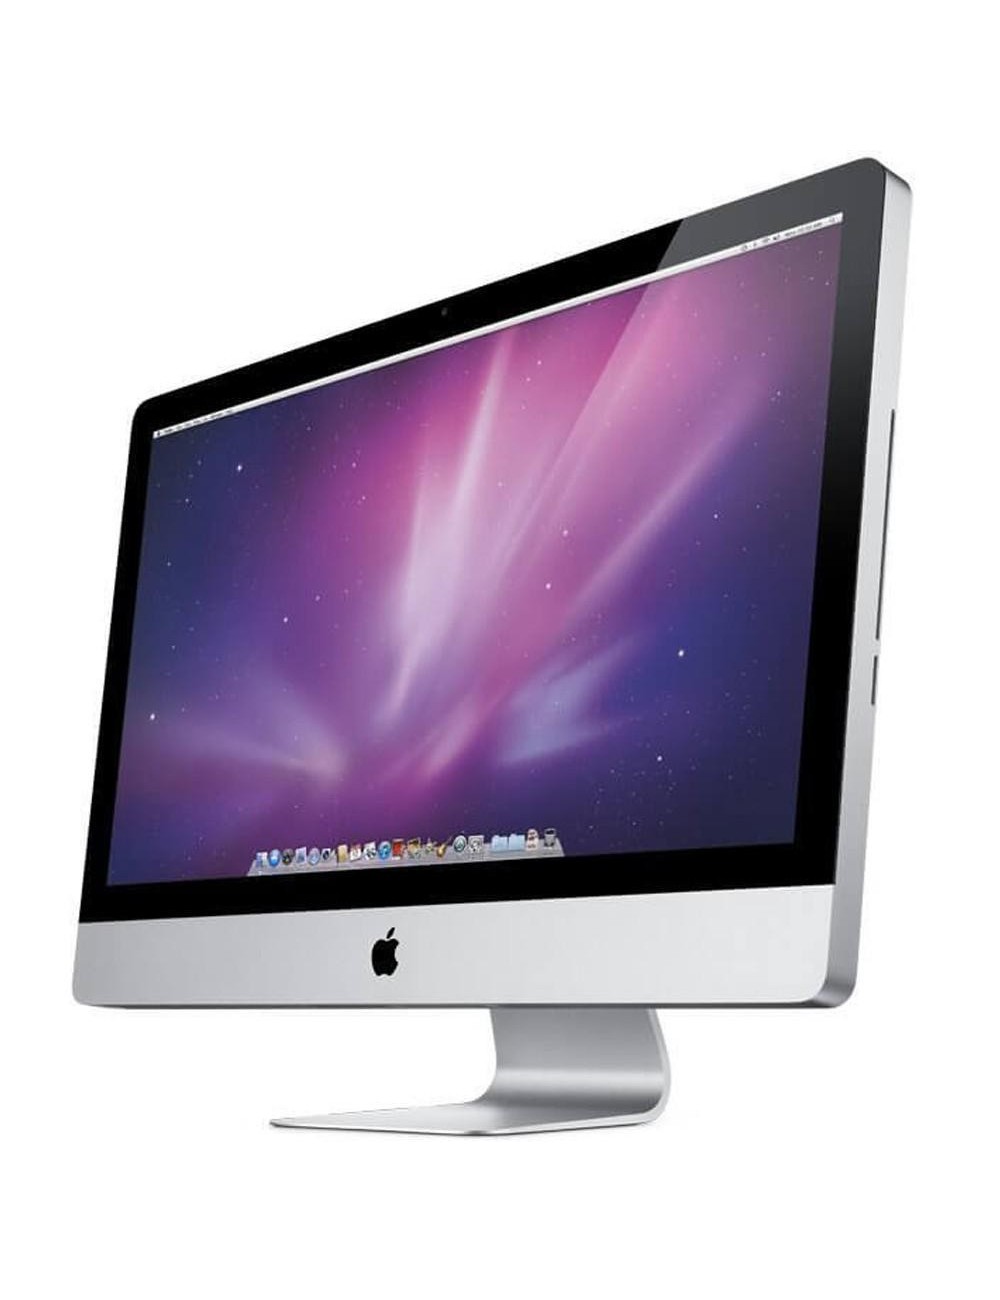 APPLE iMac - 27 AIO - Mi 2011 - Intel i7-2600 - 12 Go RAM - 2 To HDD